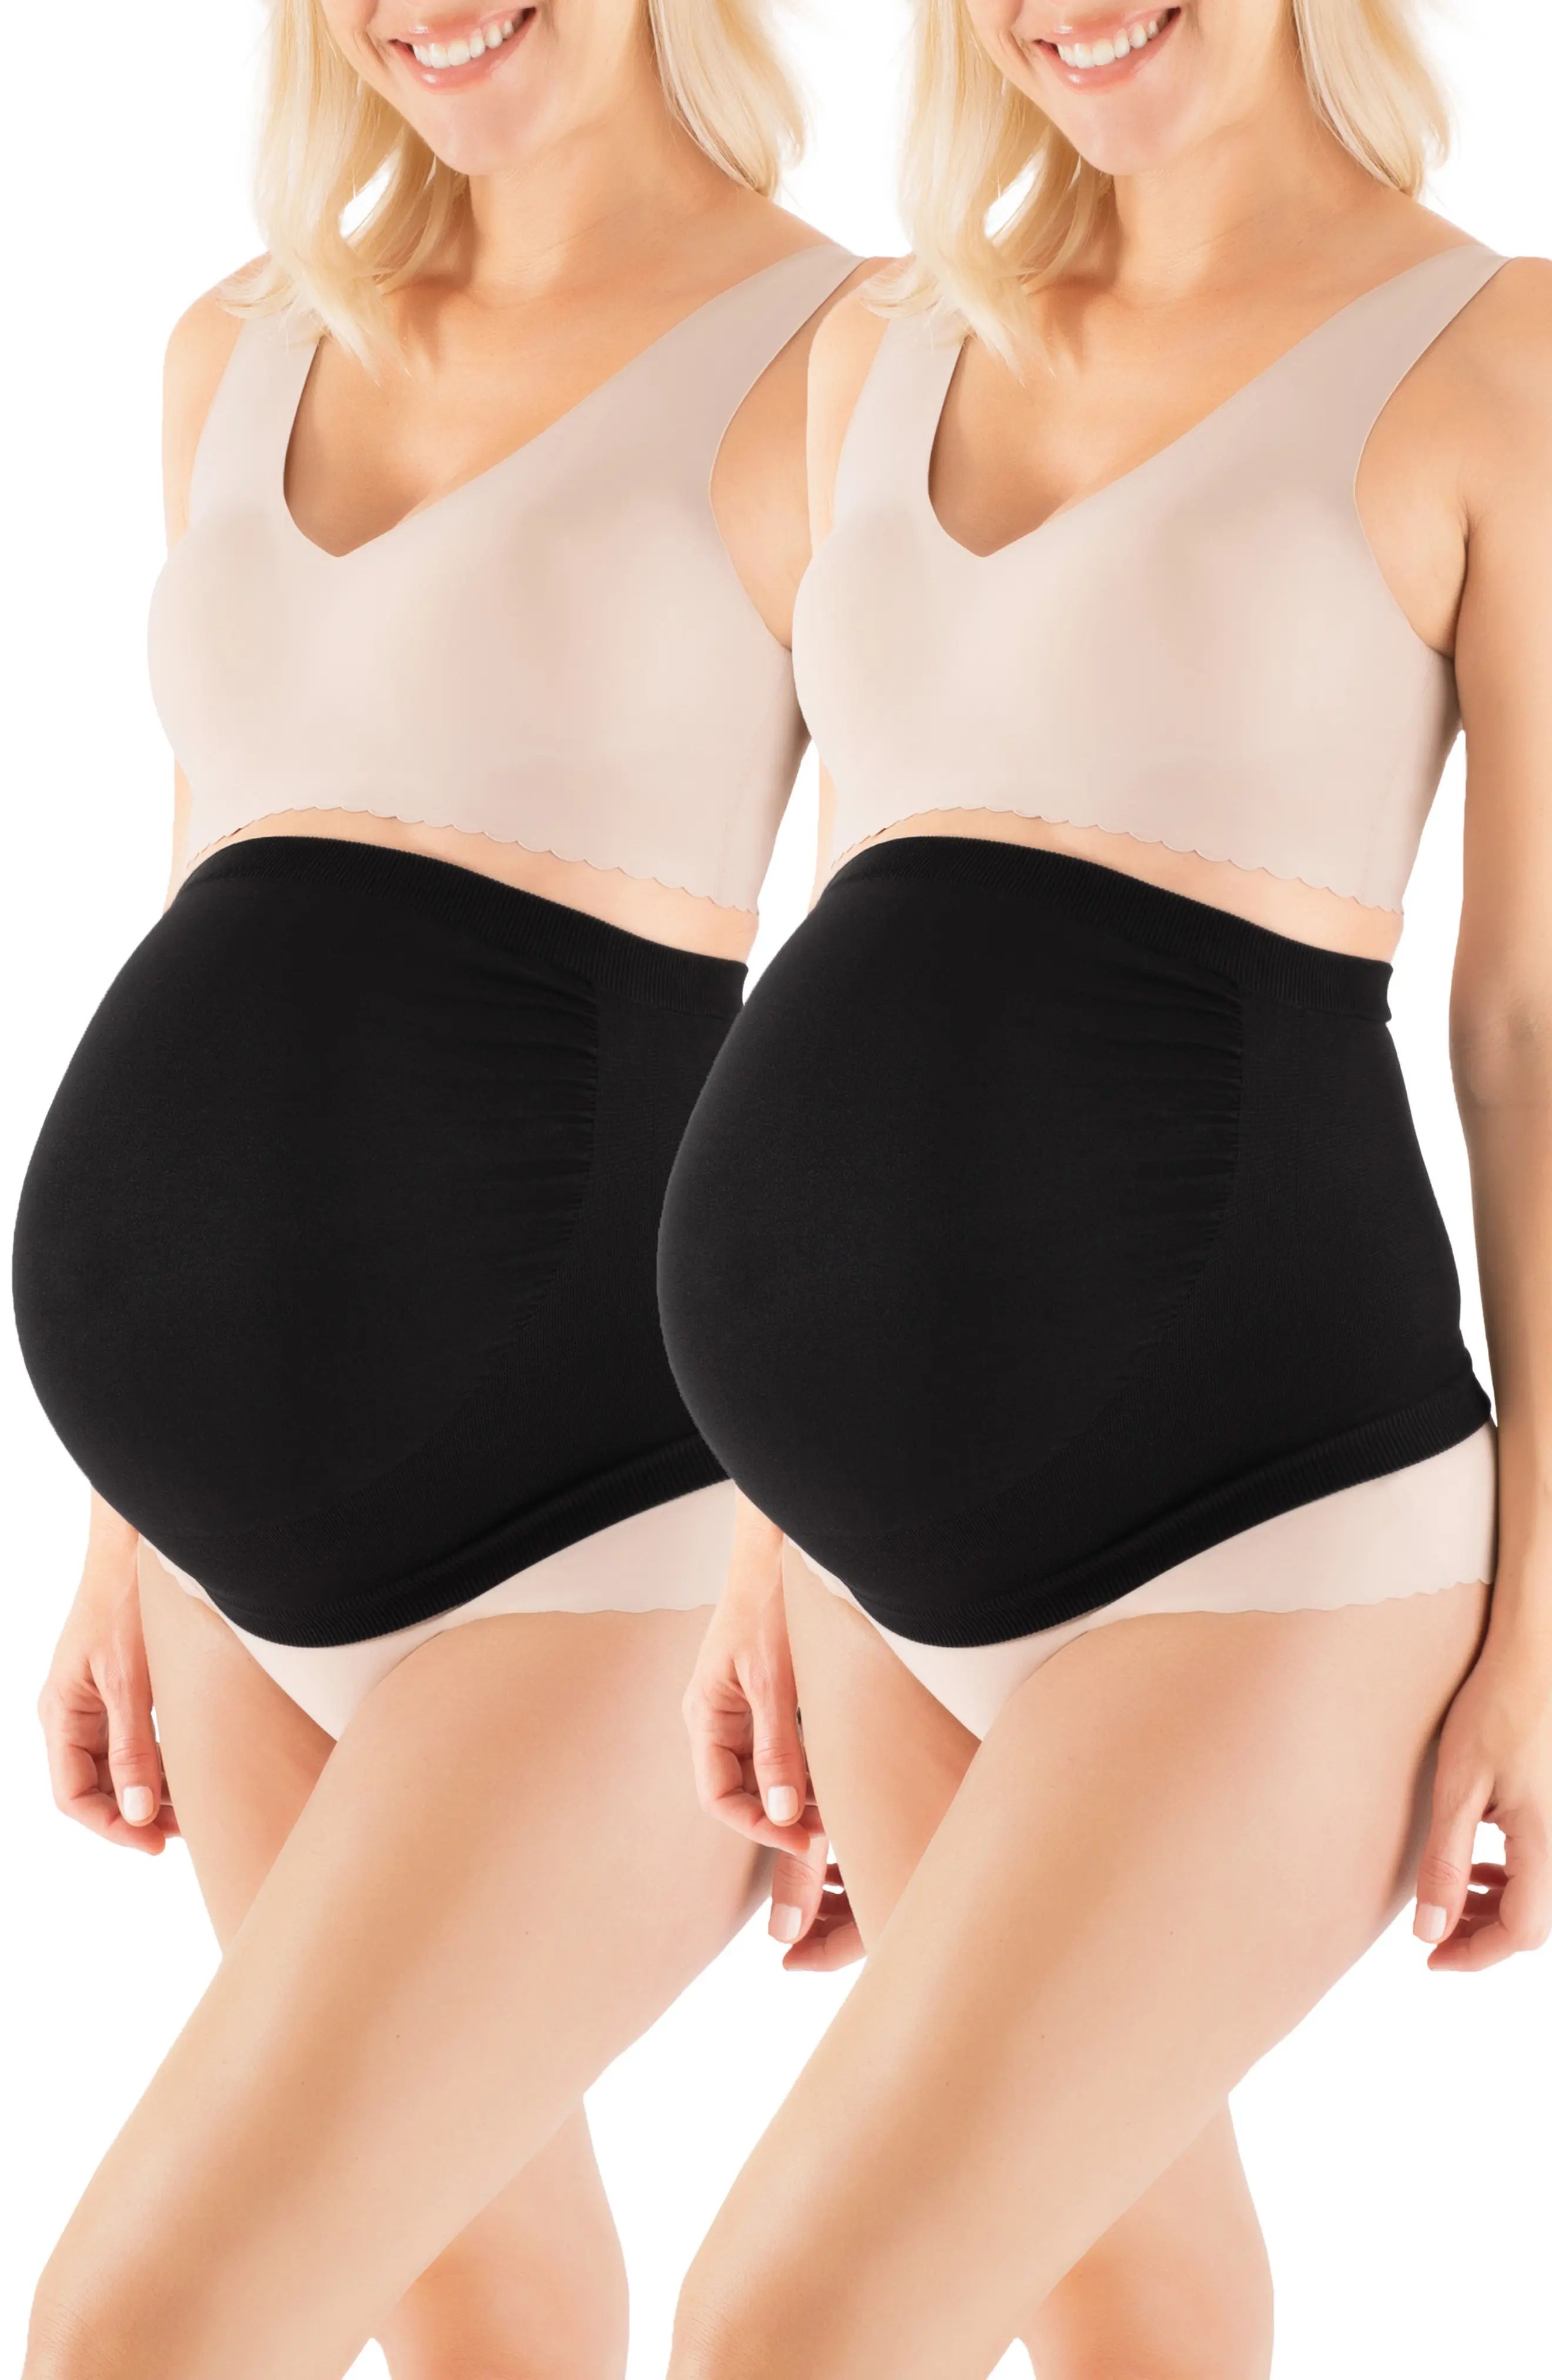 Belly Bandit(R) Belly Boost(TM) 2-Pack Bundle in Black at Nordstrom, Size X-Large | Nordstrom